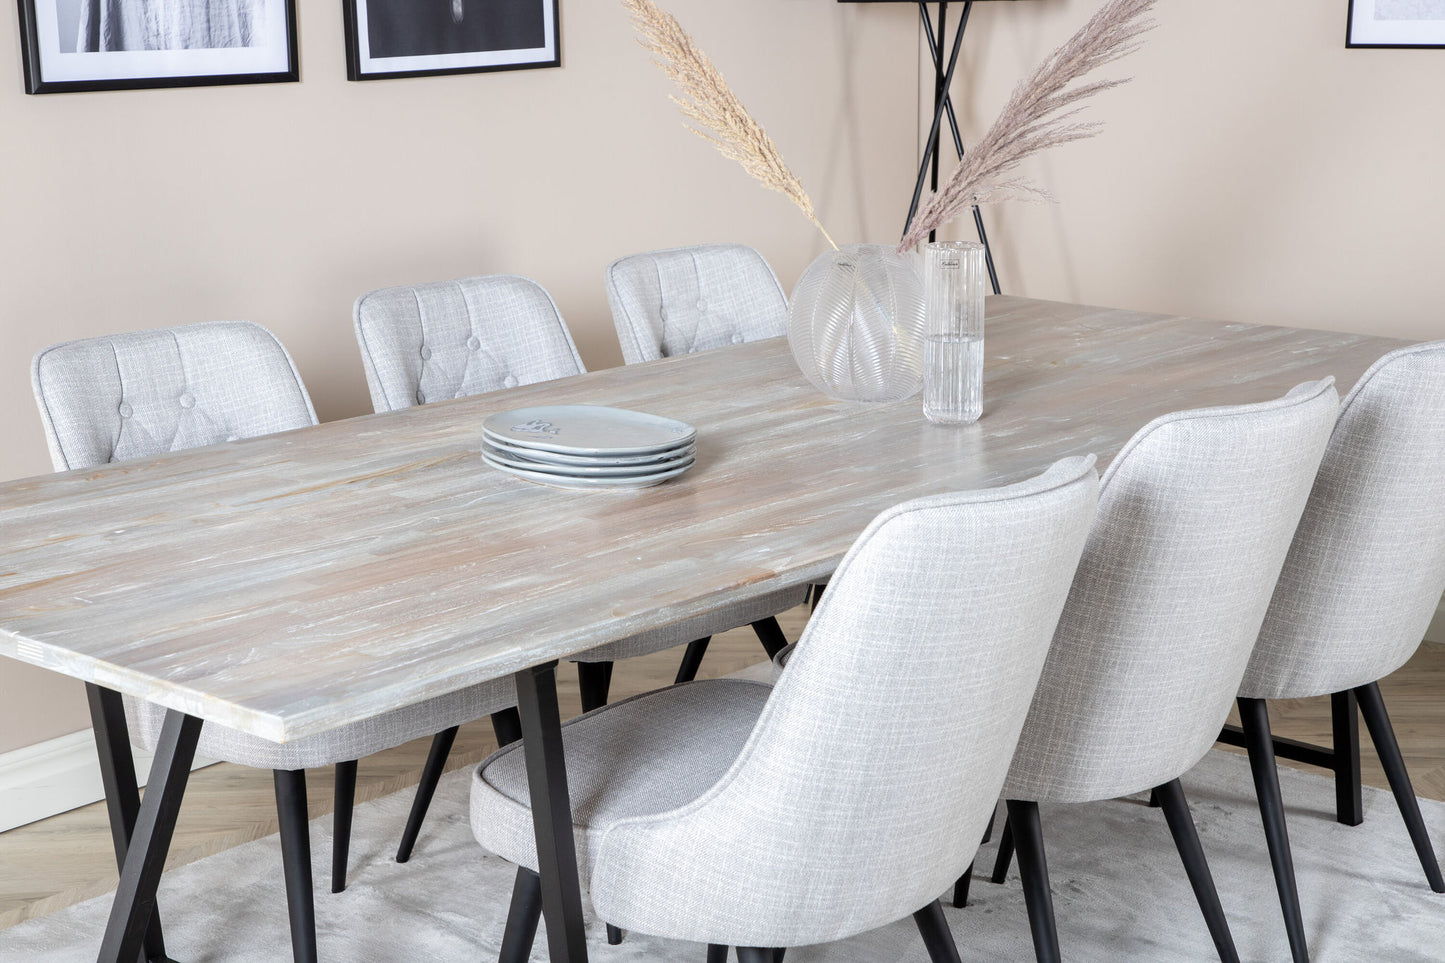 Jepara - Spisebord, 250*100*H76 - Grå /Sort+ velour Deluxe Spisebordsstol - Sorte ben - Lysegråt stof